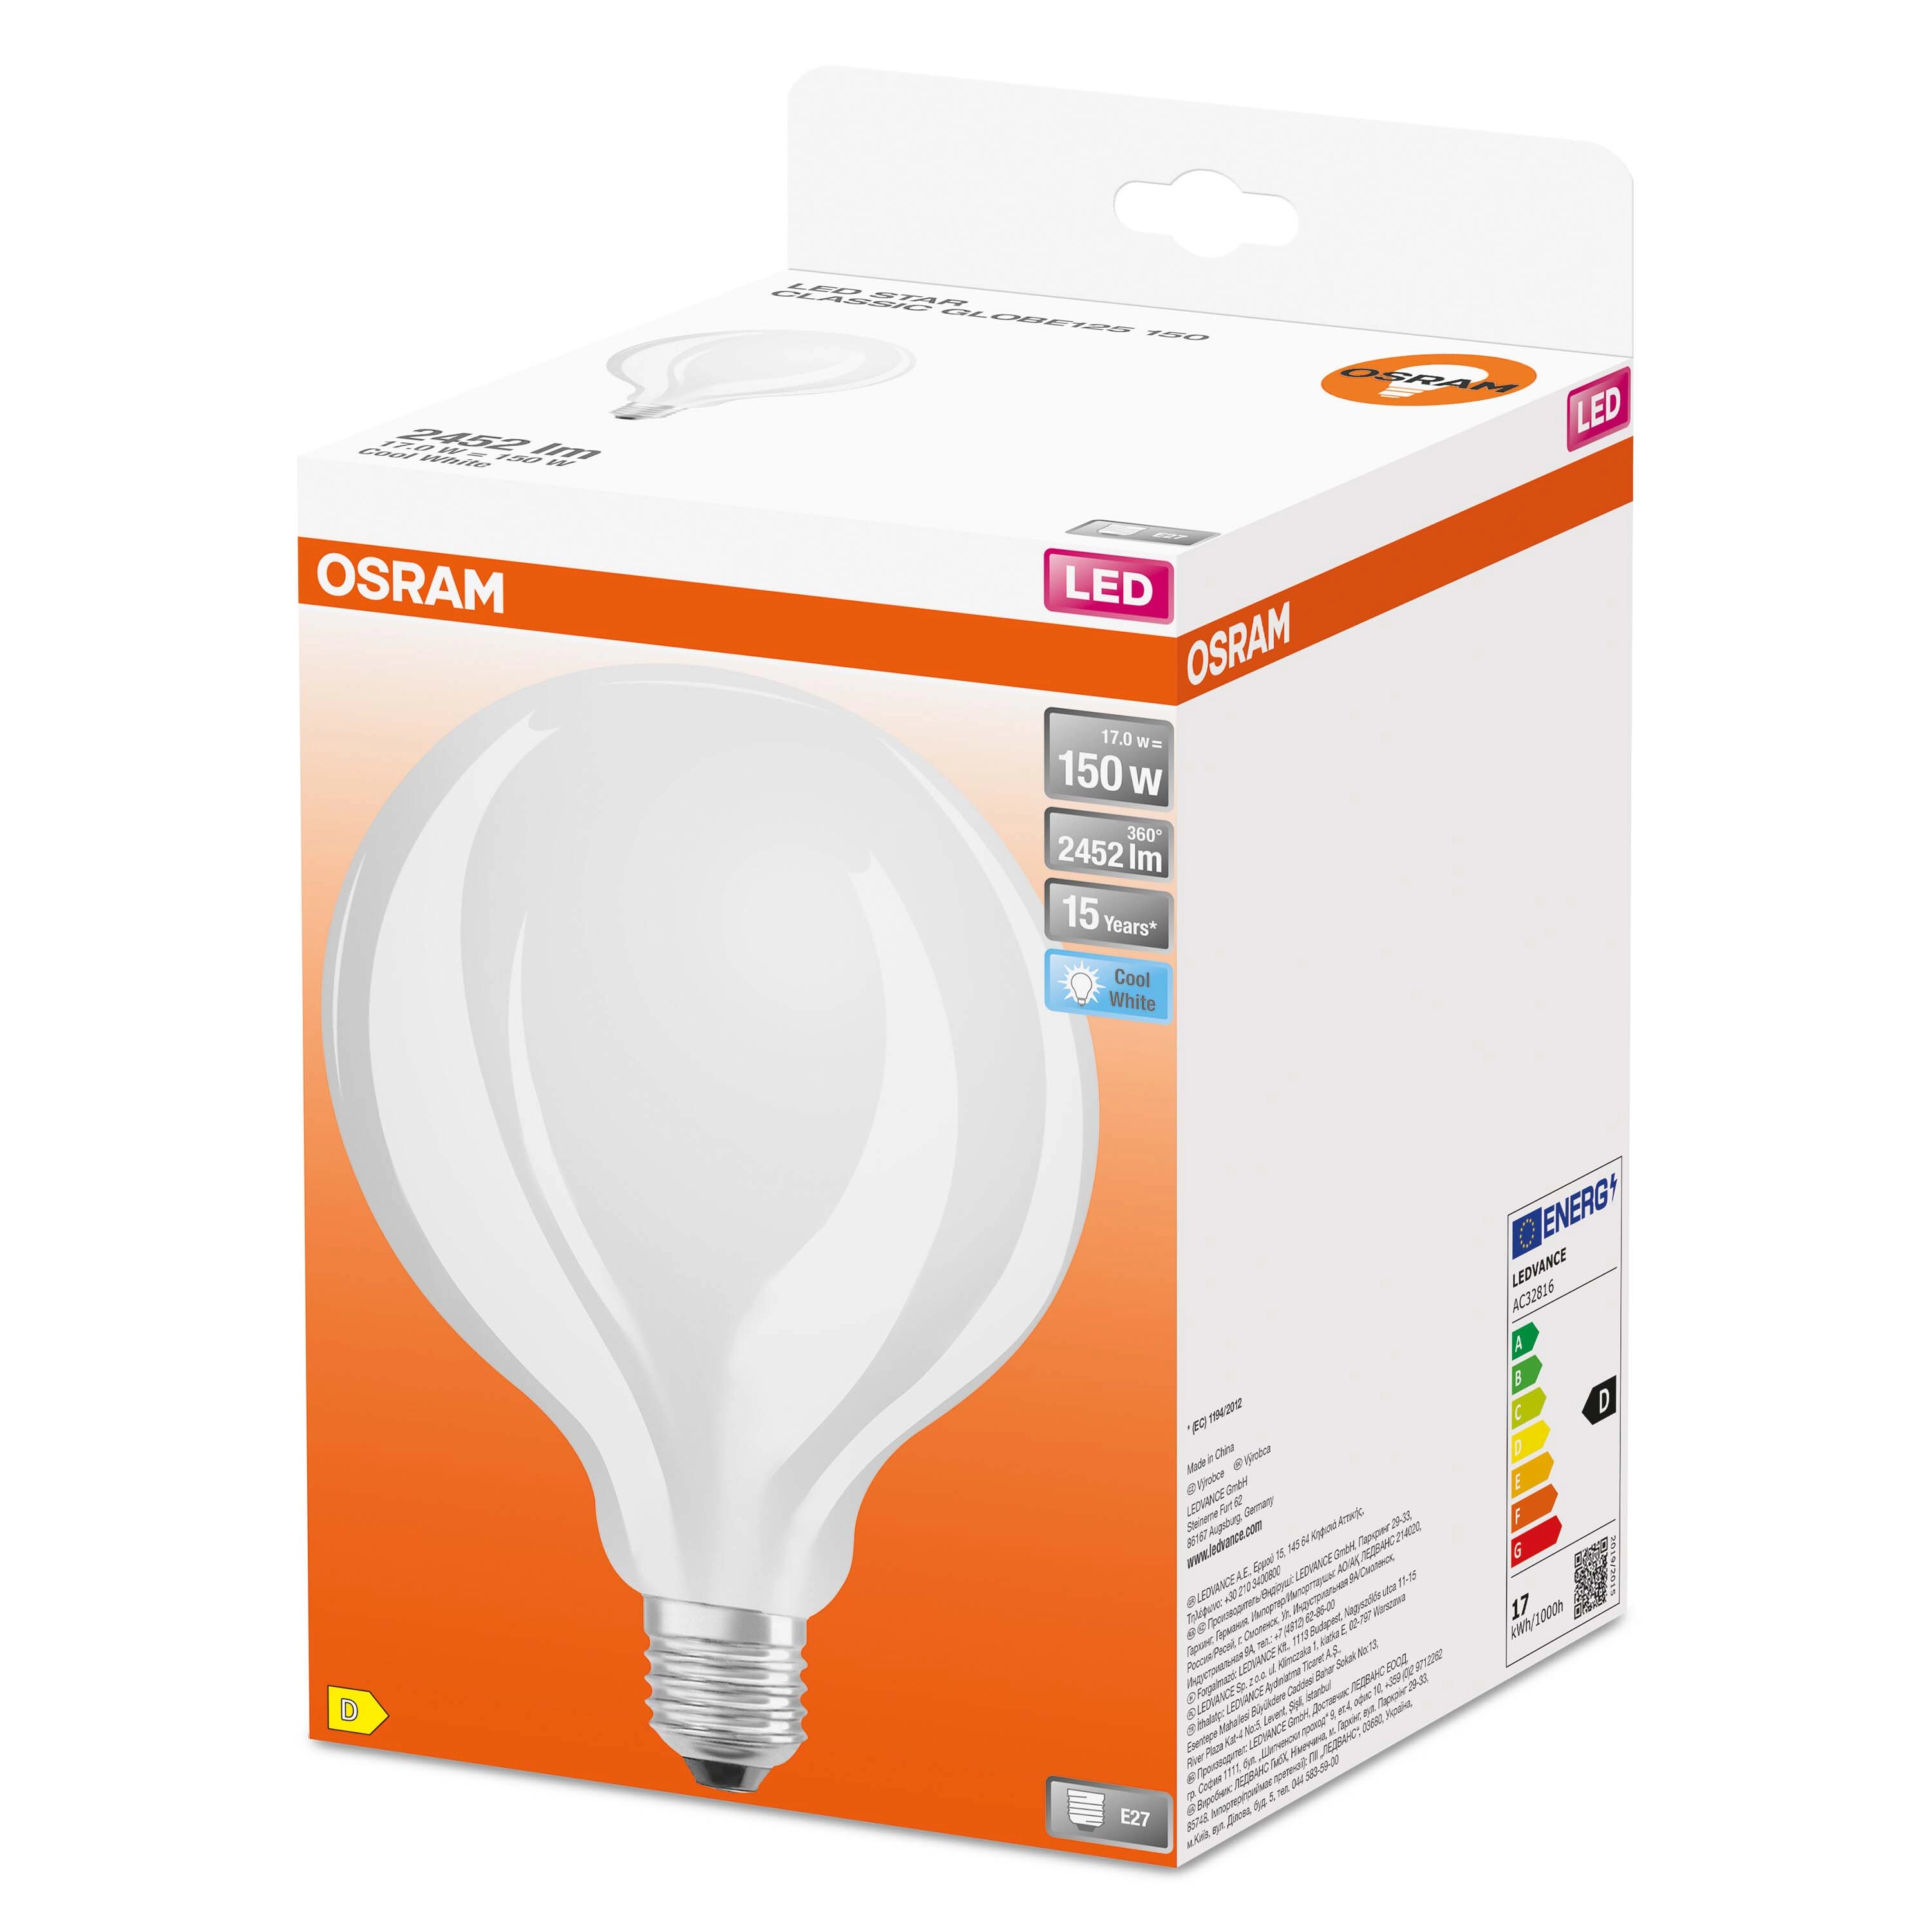 Lampadina LED a filamento smerigliata globo Osram 150 W 4000 K E27 2452 lm